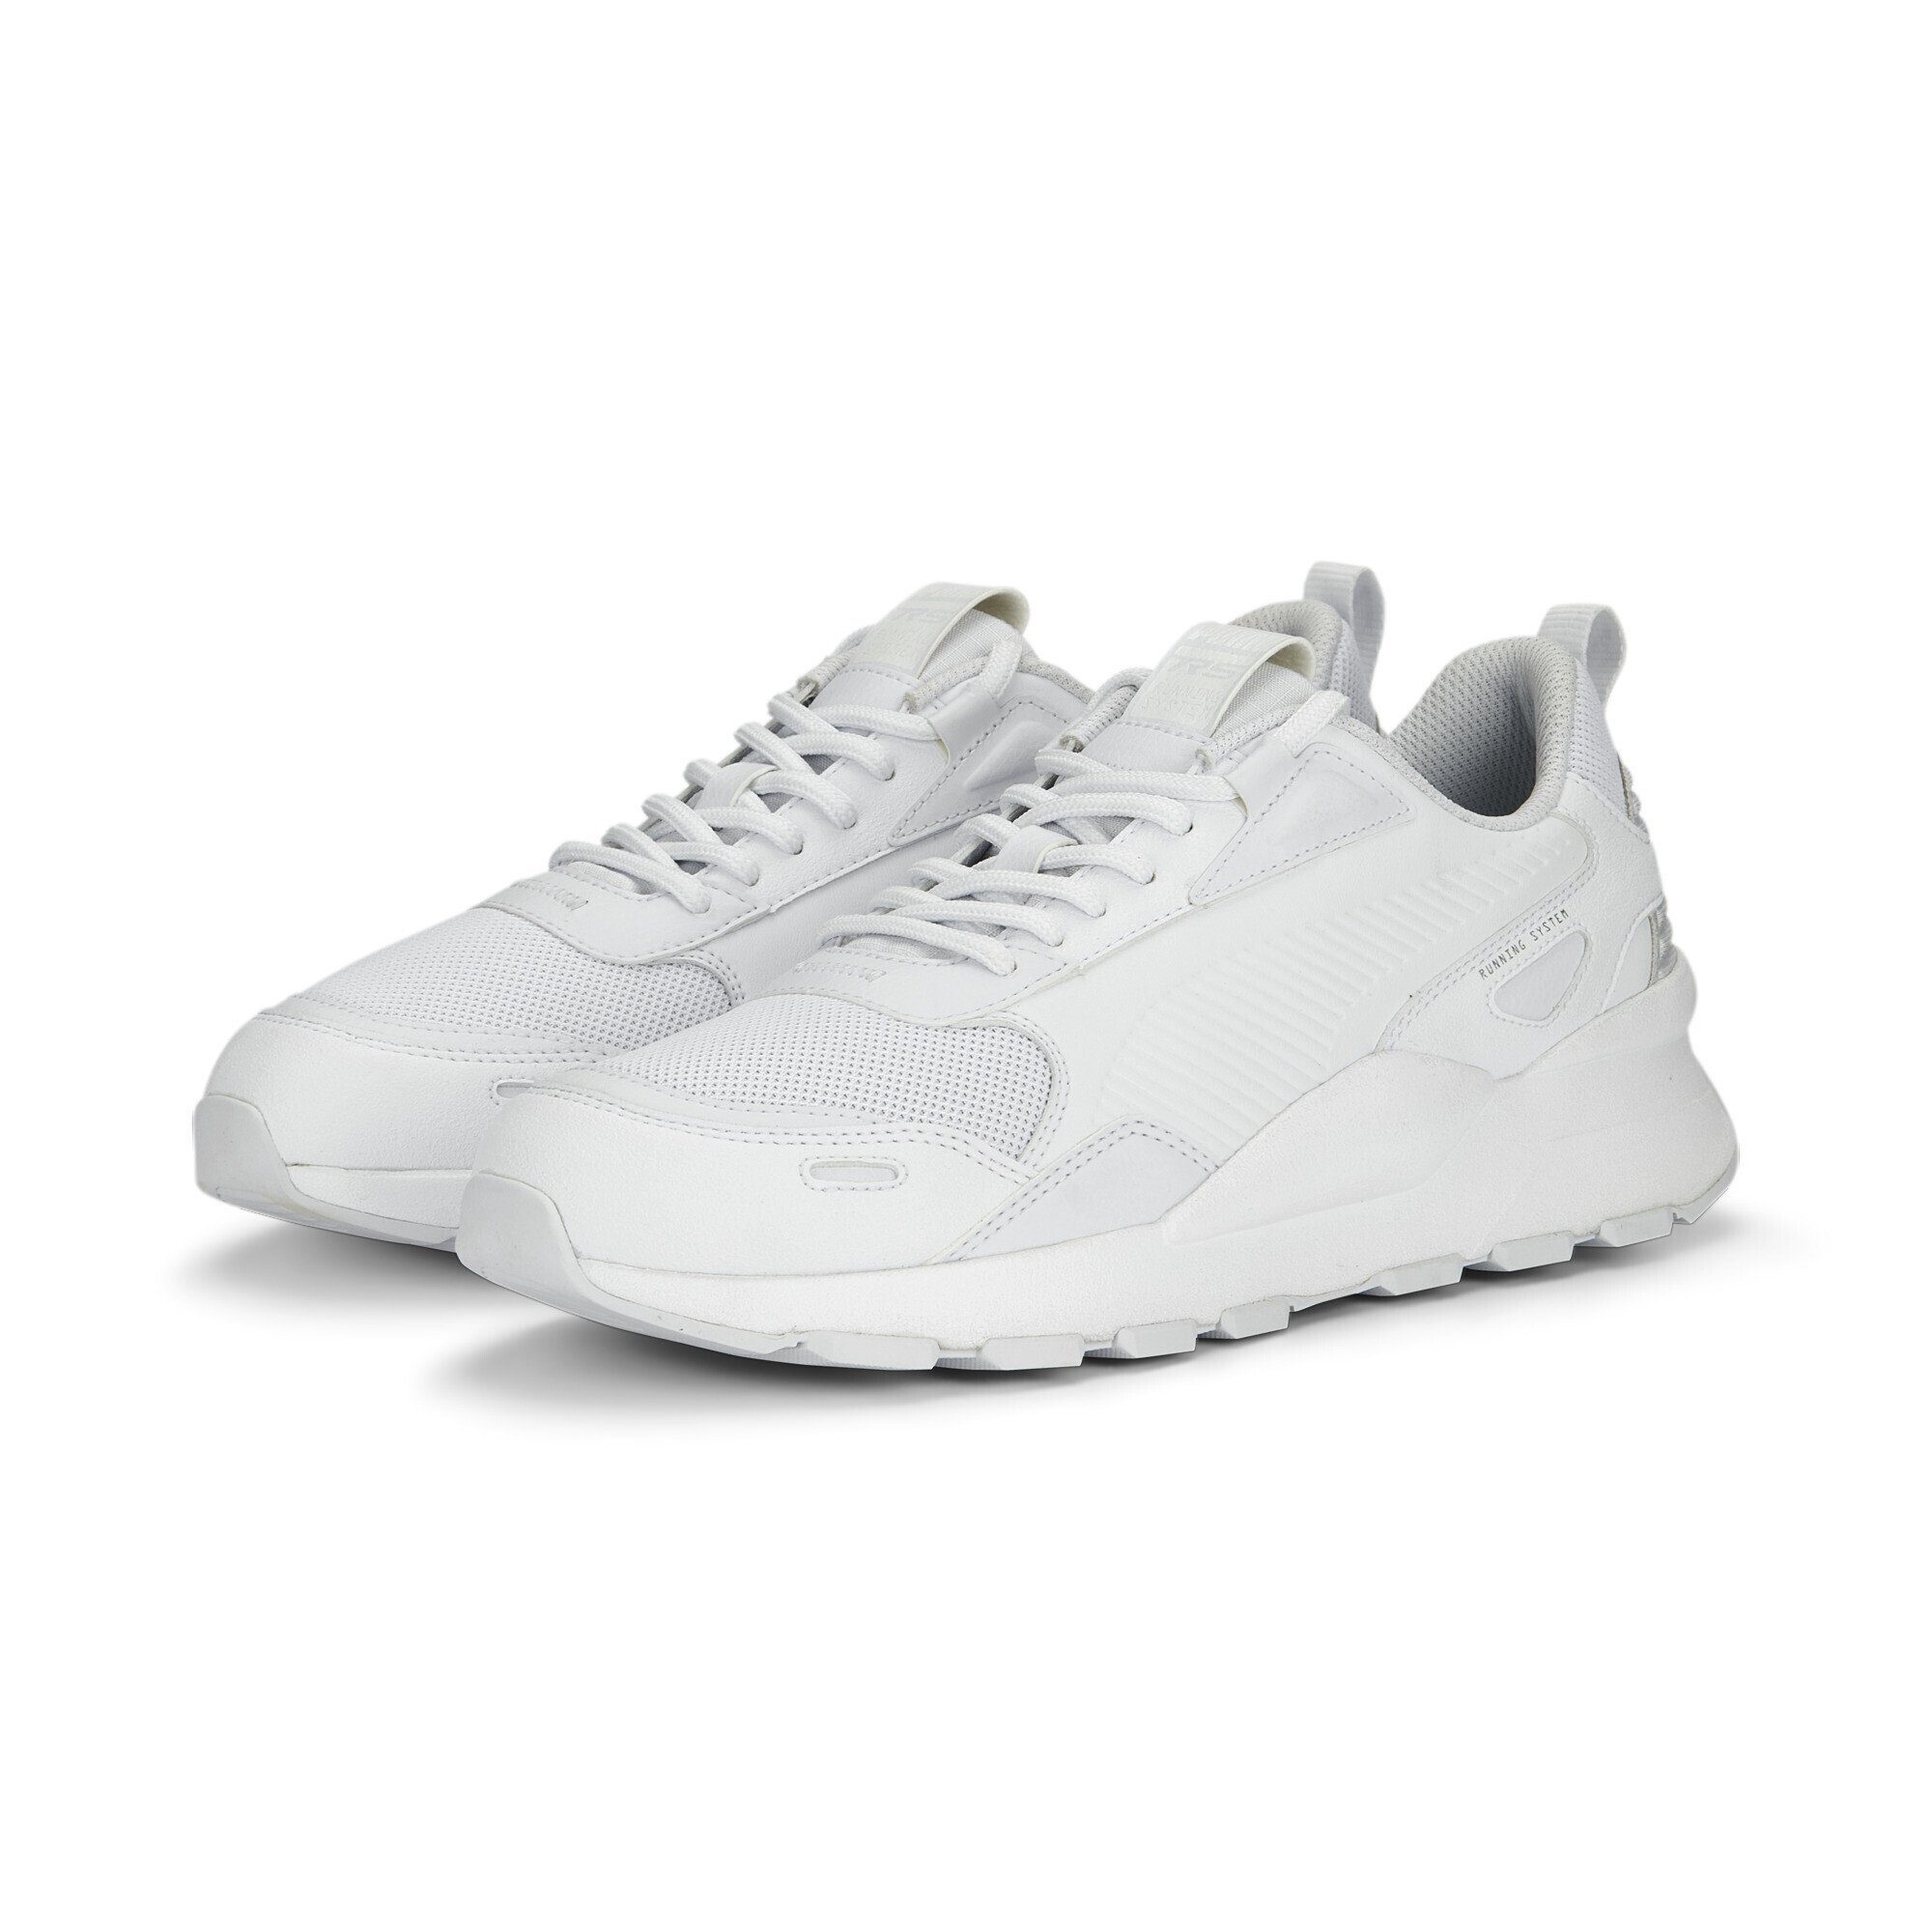 PUMA RS 3.0 Essentials Sneakers Erwachsene Sneaker White Black